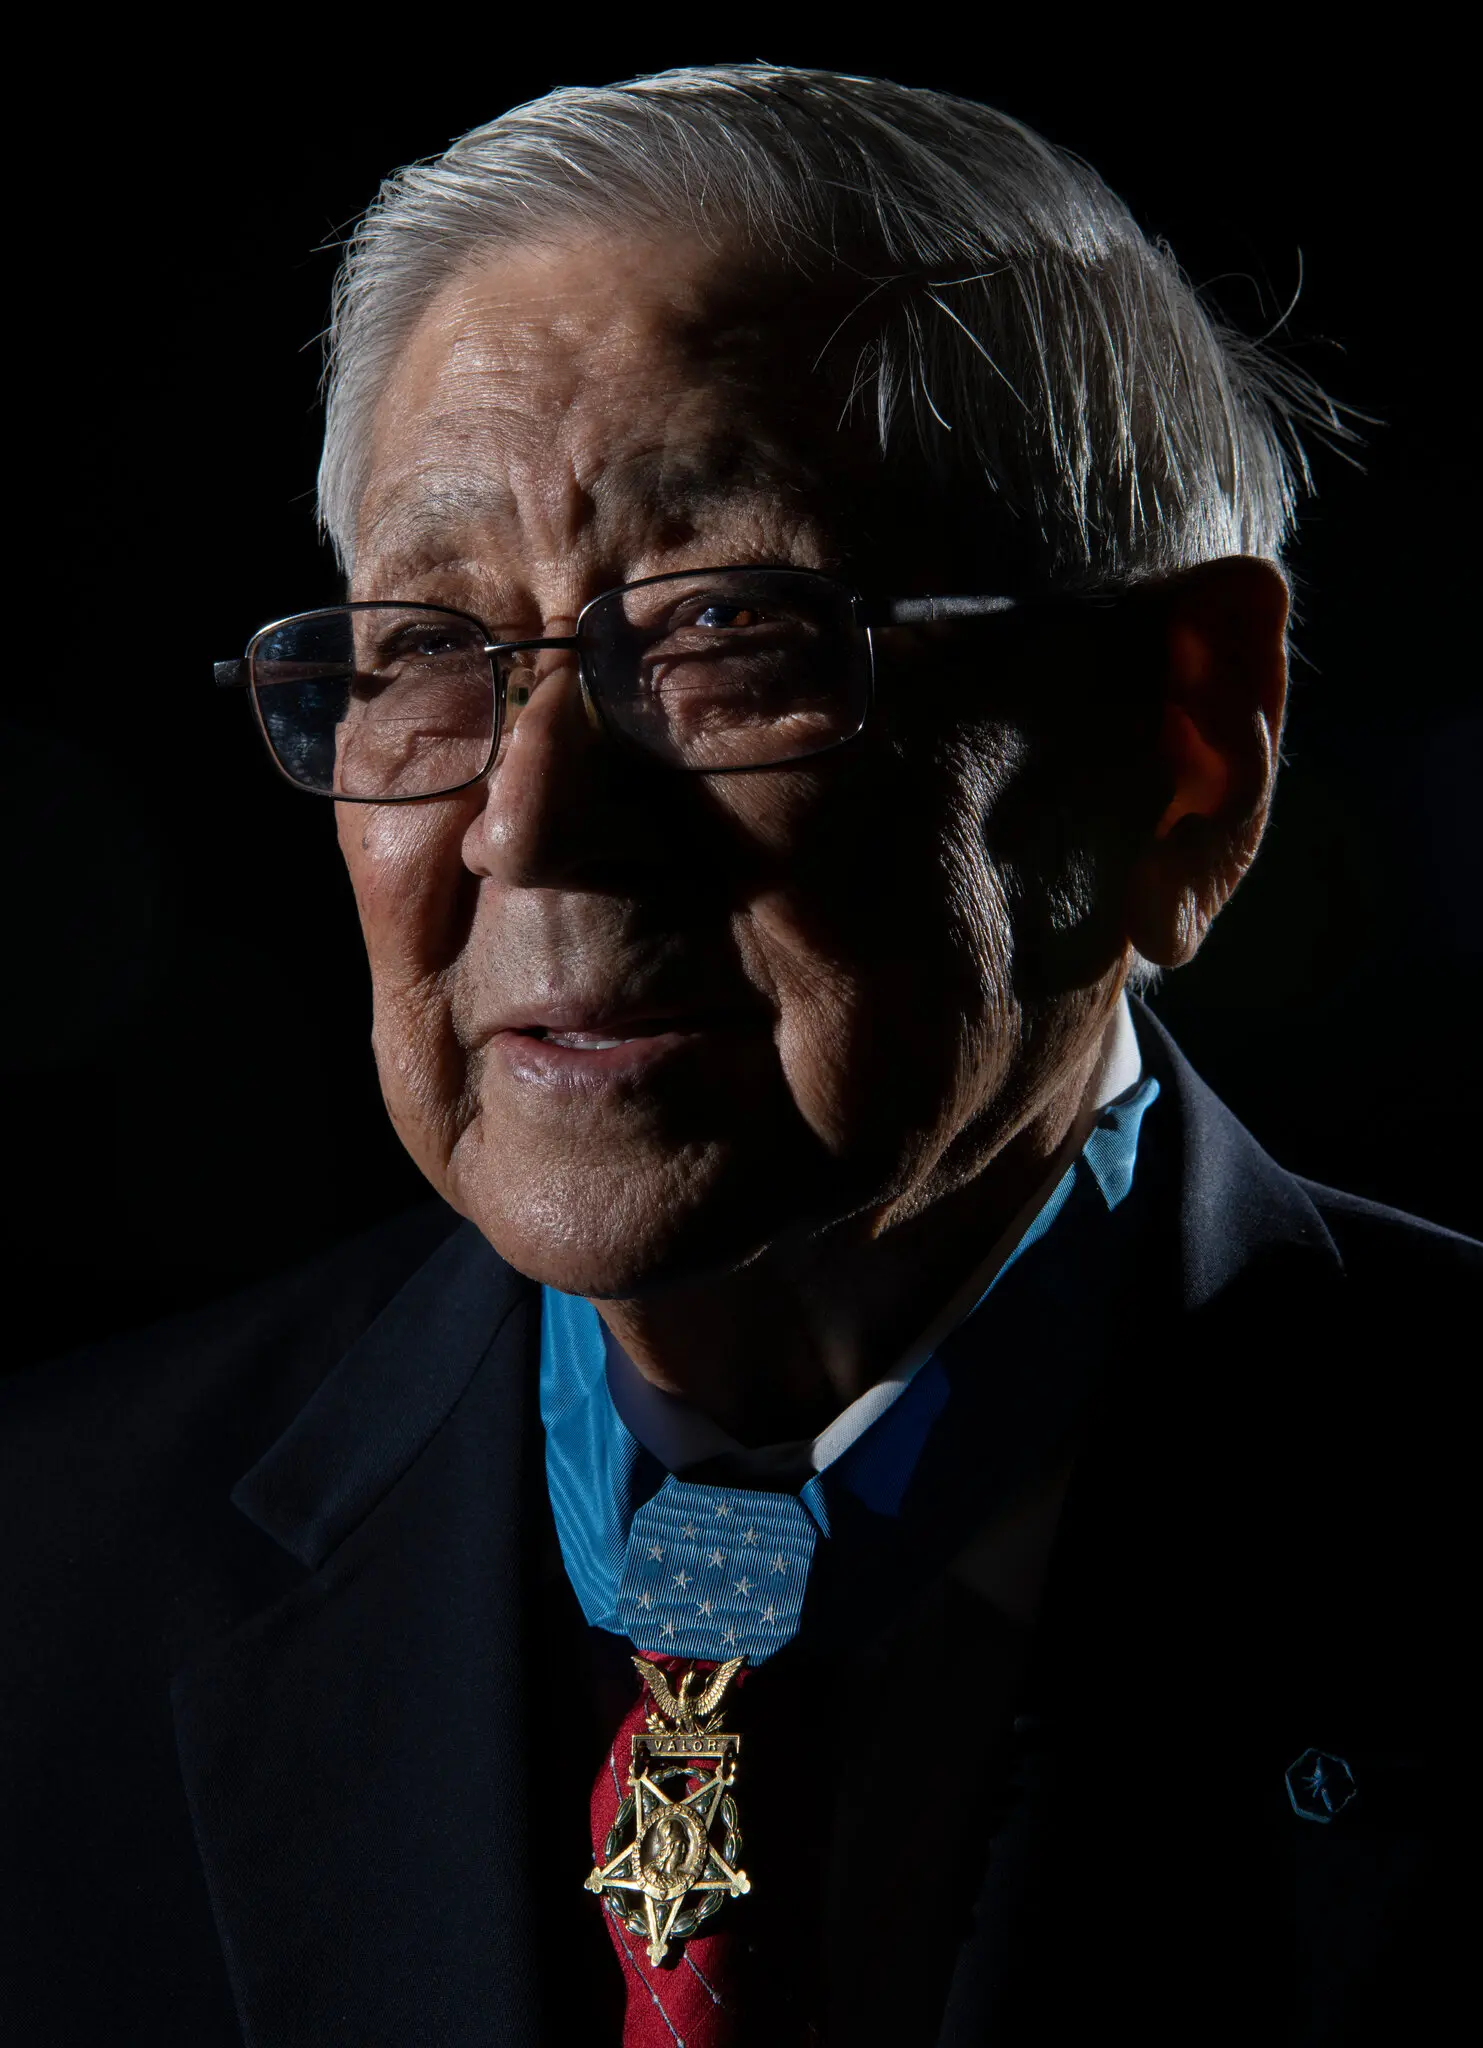 Hiroshi Miyamura usando sua Medalha de Honra em 2019. Ele foi líder de esquadrão na Terceira Divisão de Infantaria em um Exército integrado, tendo os militares sido desagregados após a Segunda Guerra Mundial. (Crédito...Força aérea dos Estados Unidos)